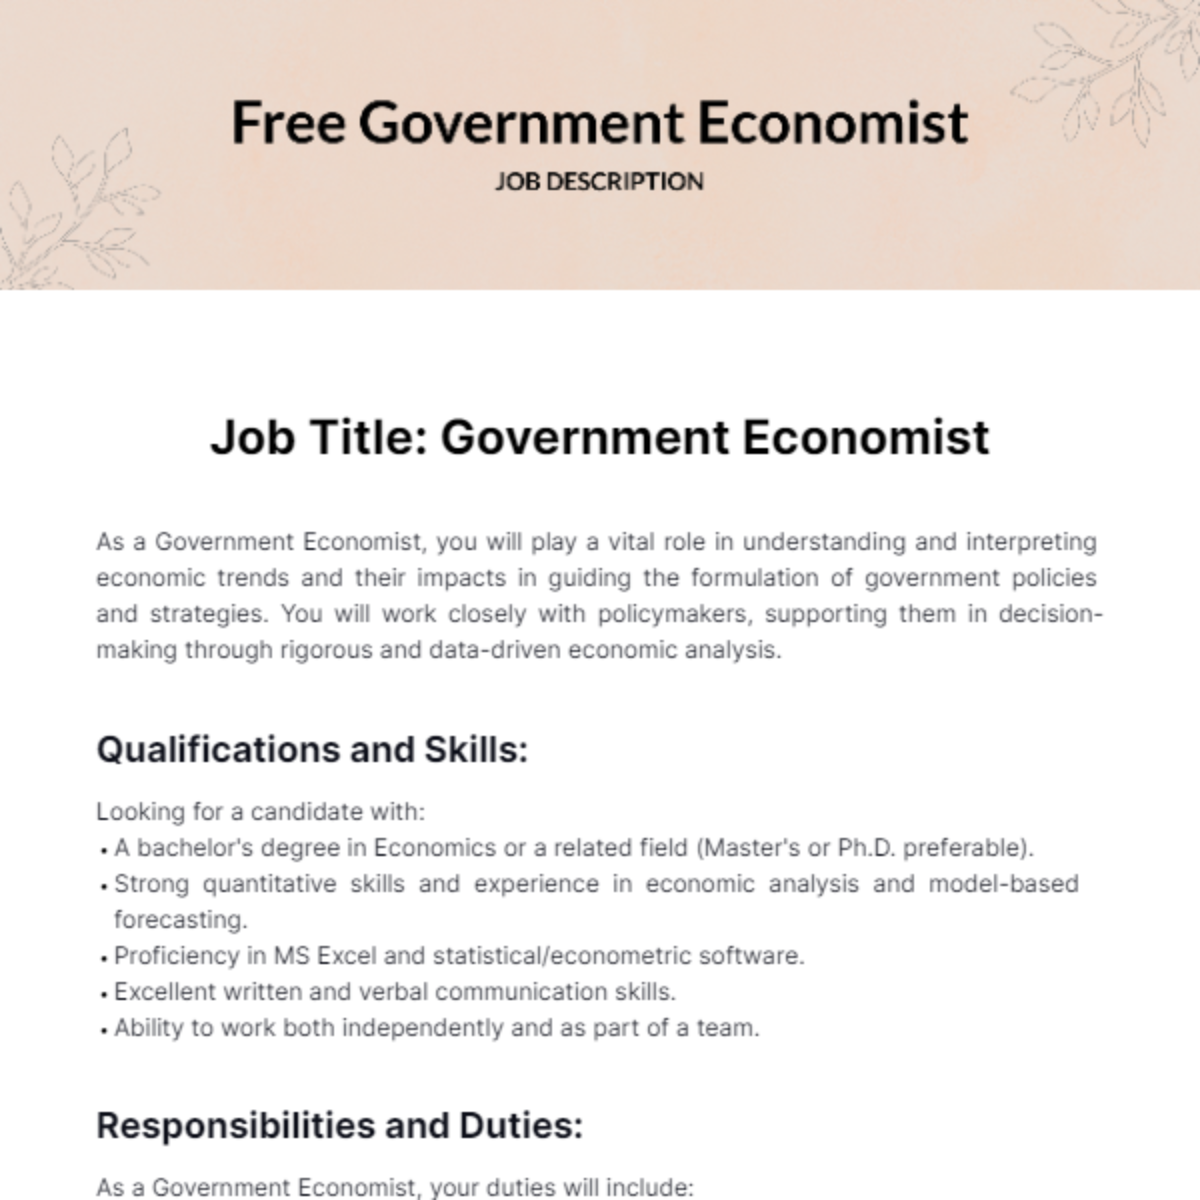 Government Economist Job Description Template